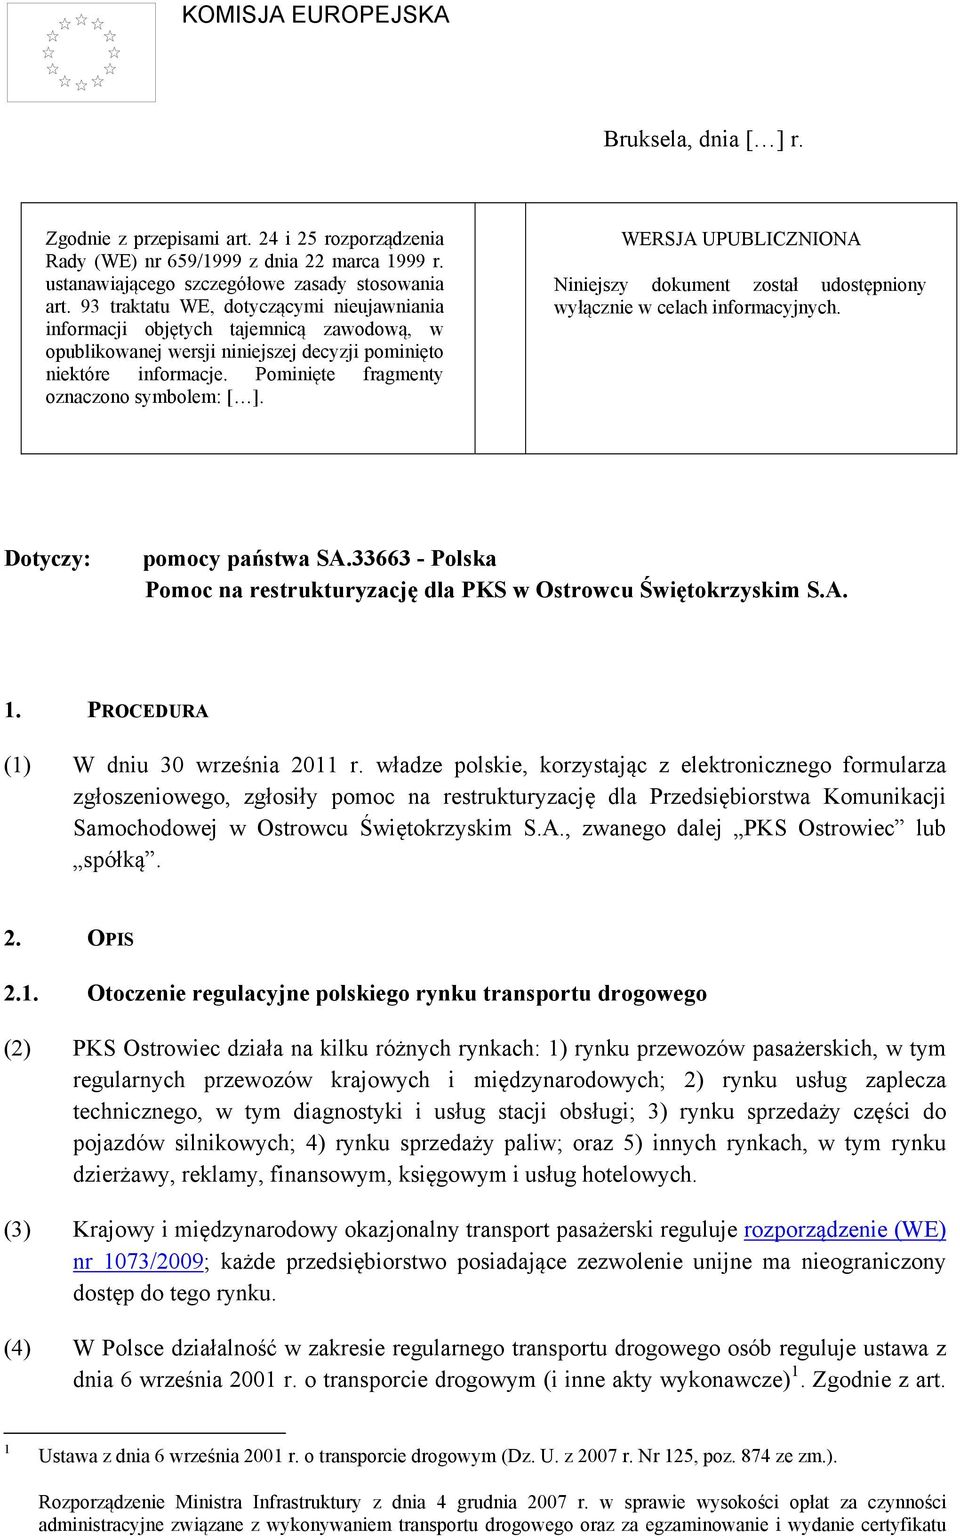 WERSJA UPUBLICZNIONA Niniejszy dokument został udostępniony wyłącznie w celach informacyjnych. Dotyczy: pomocy państwa SA.33663 - Polska Pomoc na restrukturyzację dla PKS w Ostrowcu Świętokrzyskim S.